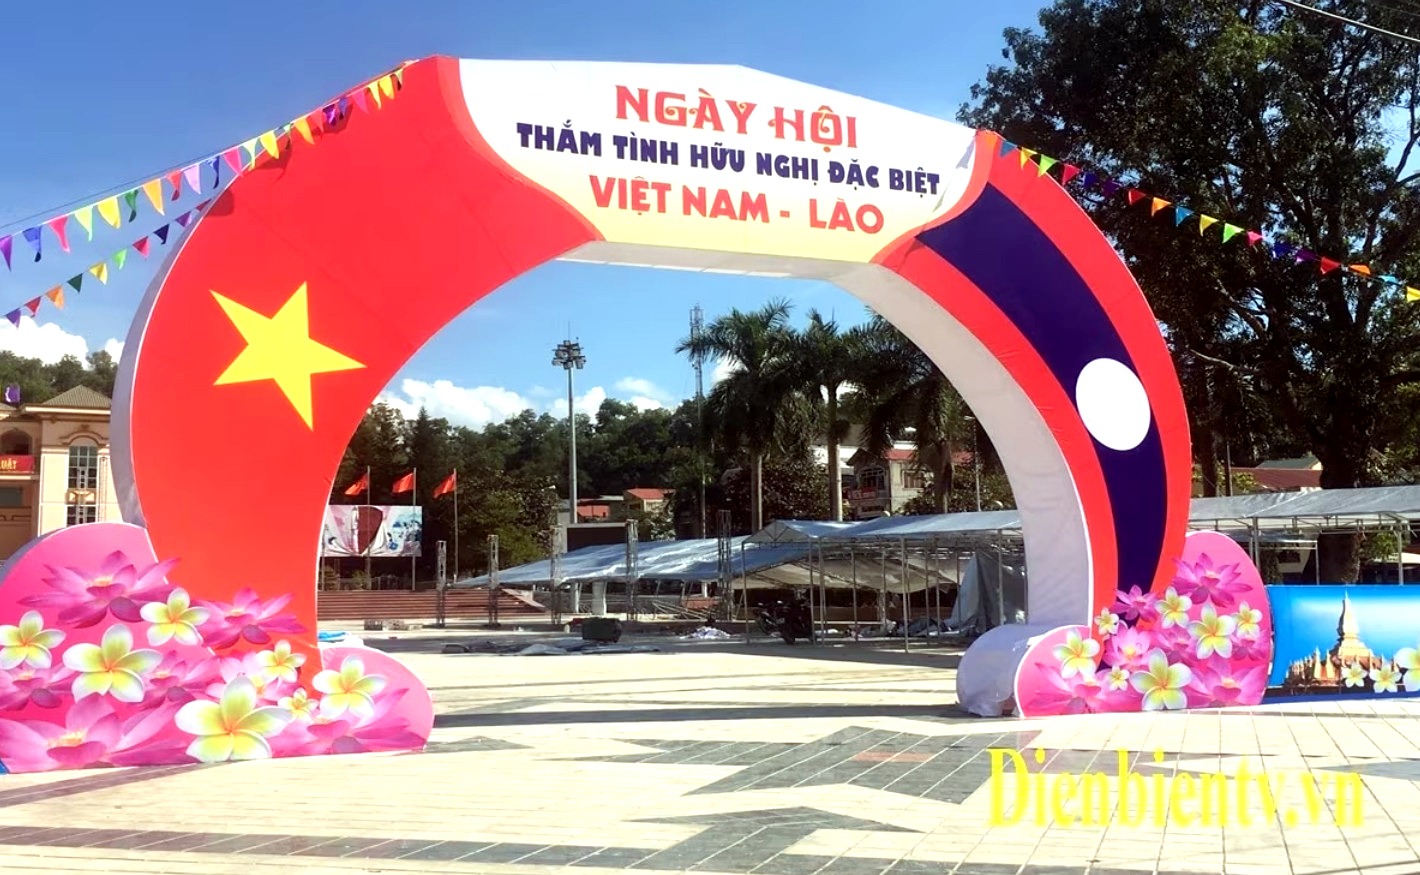 Quan hệ hợp tác Việt - Lào, Chương trình thắm tình hữu nghị đặc biệt Việt Nam - Lào